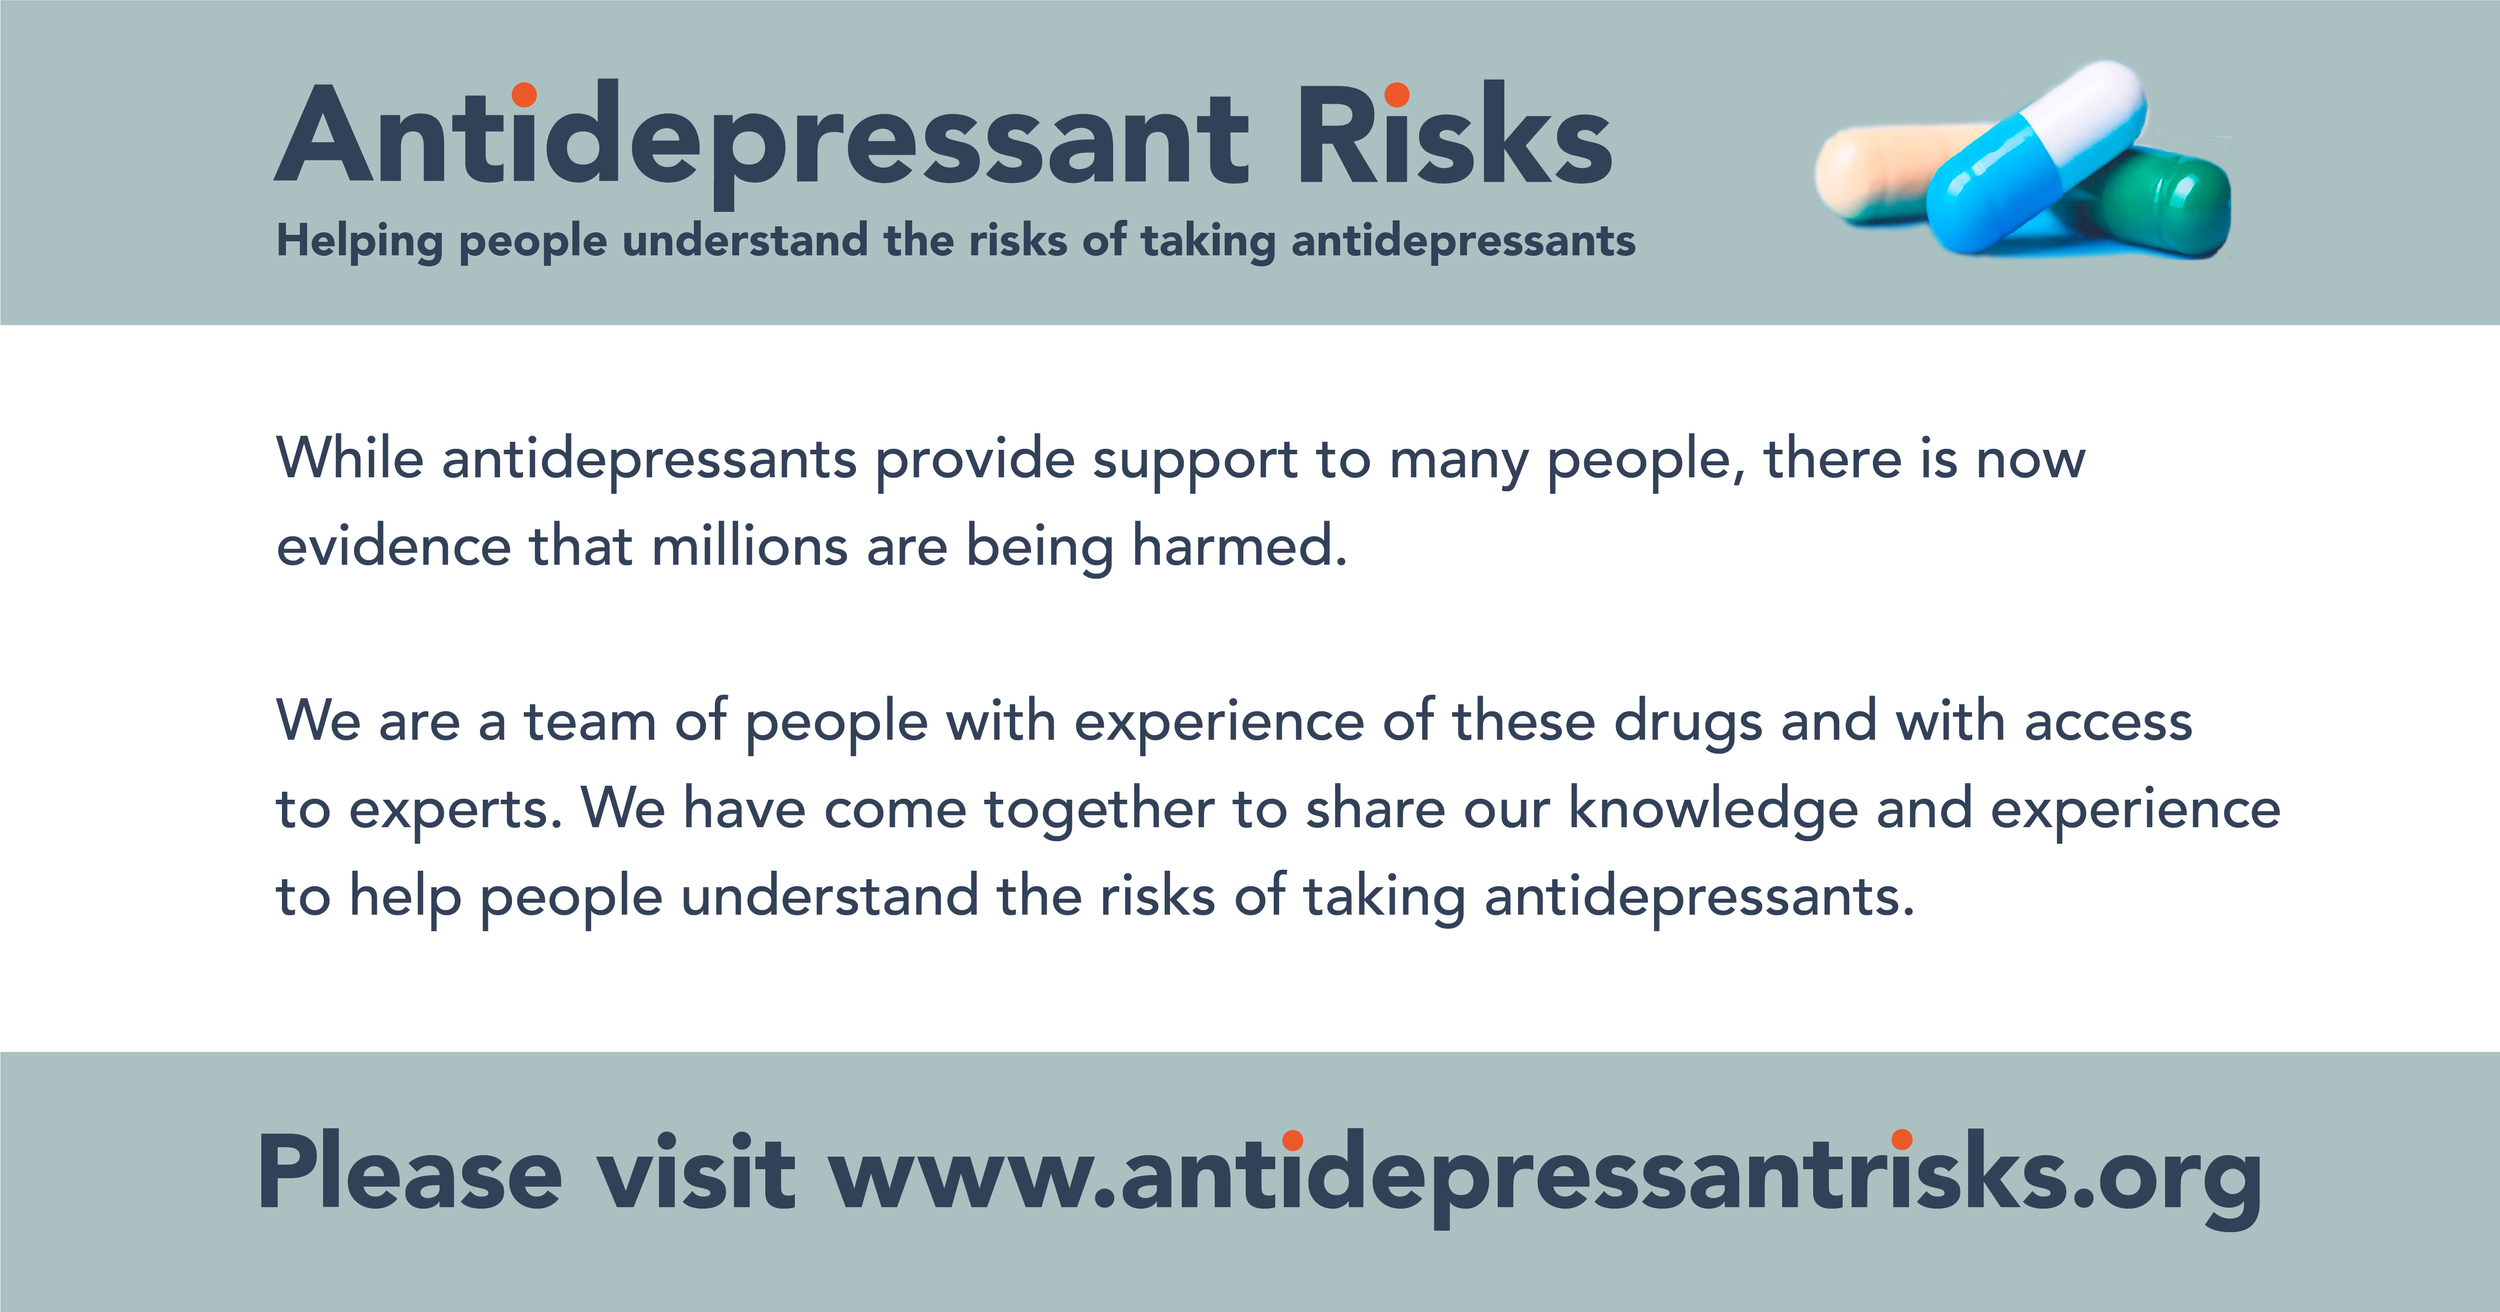 www.antidepressantrisks.org